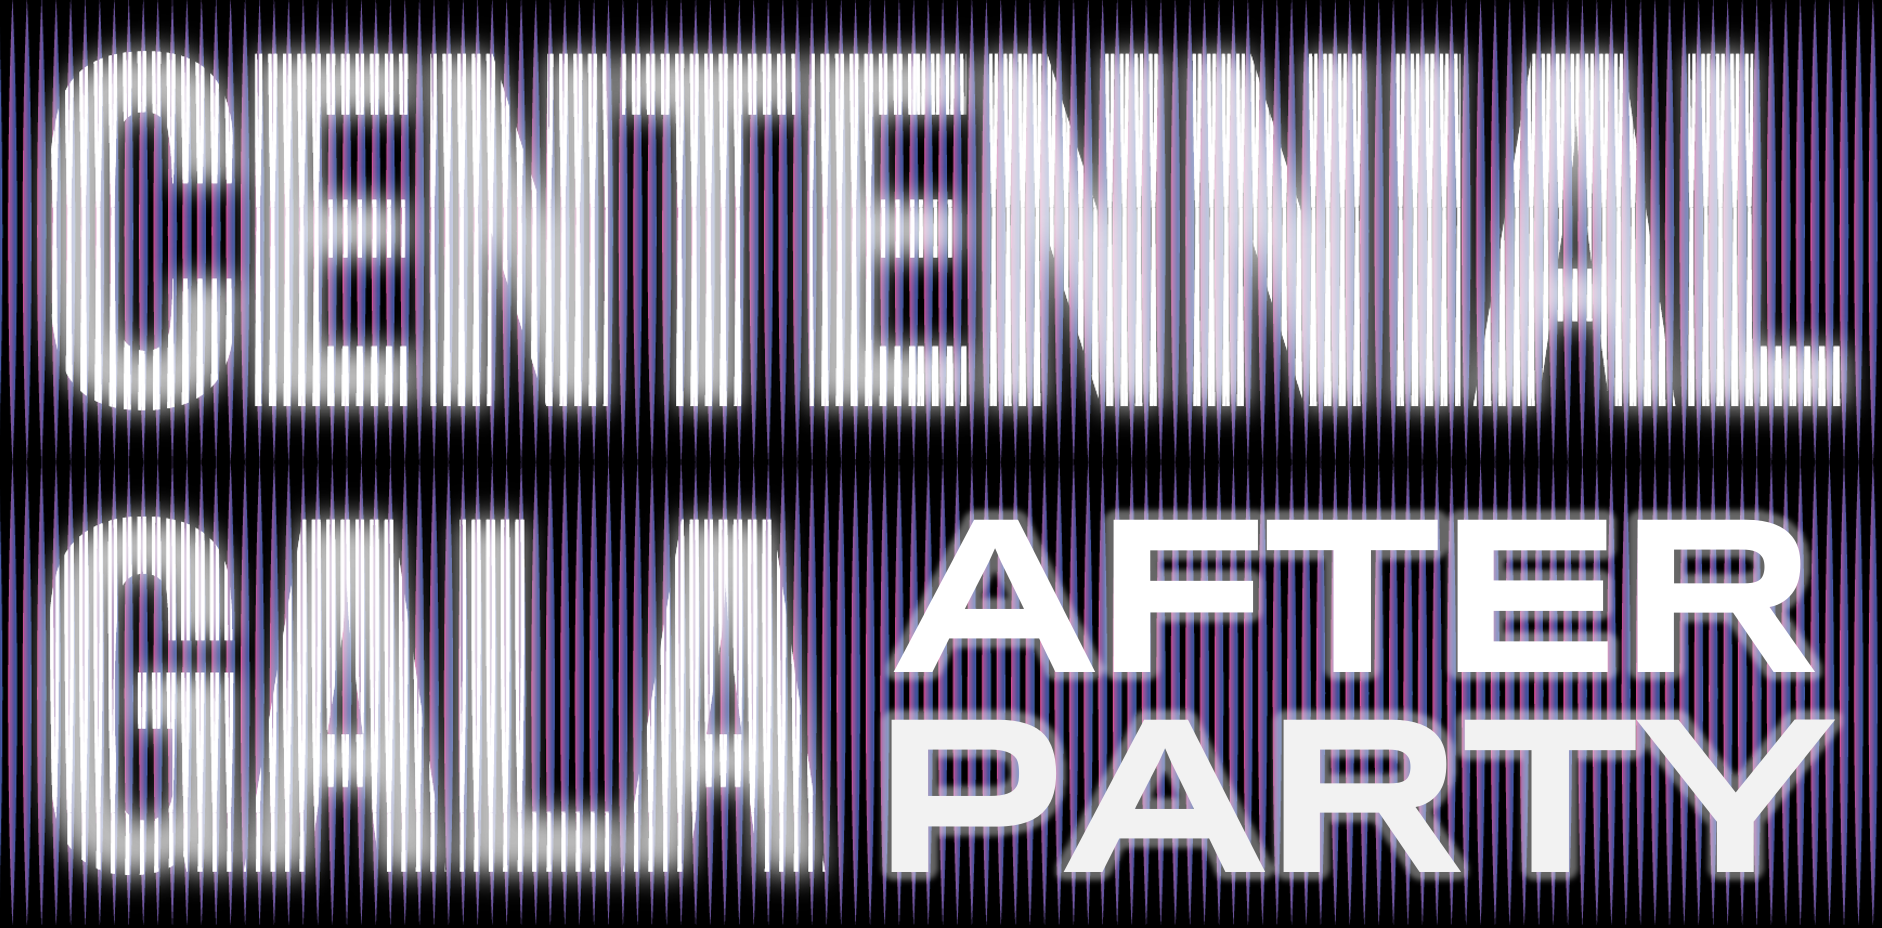 Gala do Centenário: After Party.